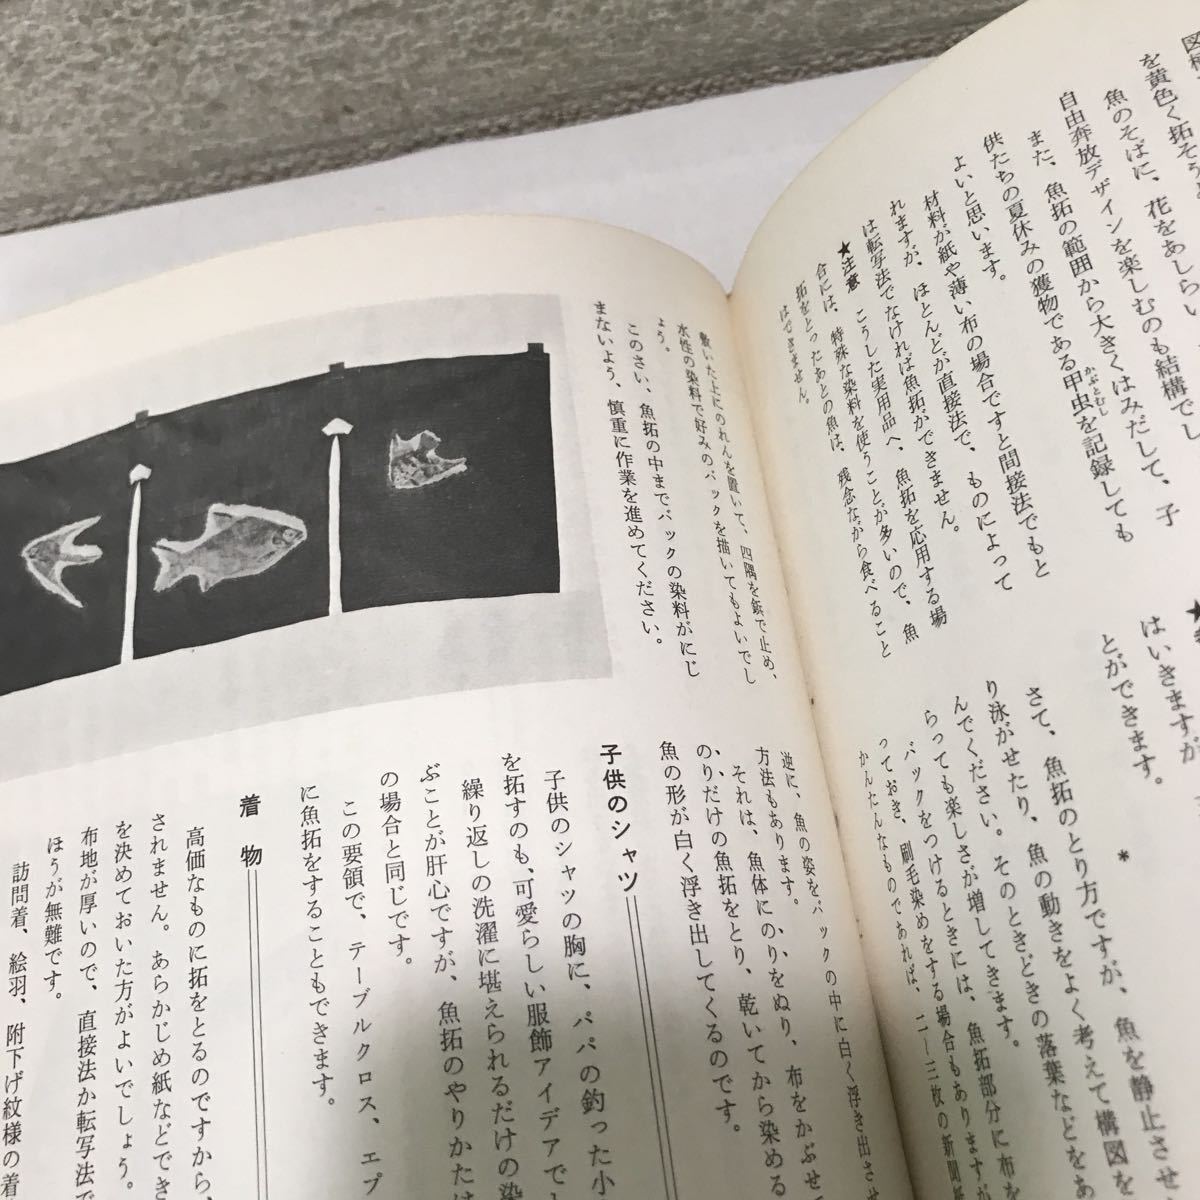 L05 魚拓 作り方と鑑賞 清水游谷 著 1972年発行 高橋書店 Off